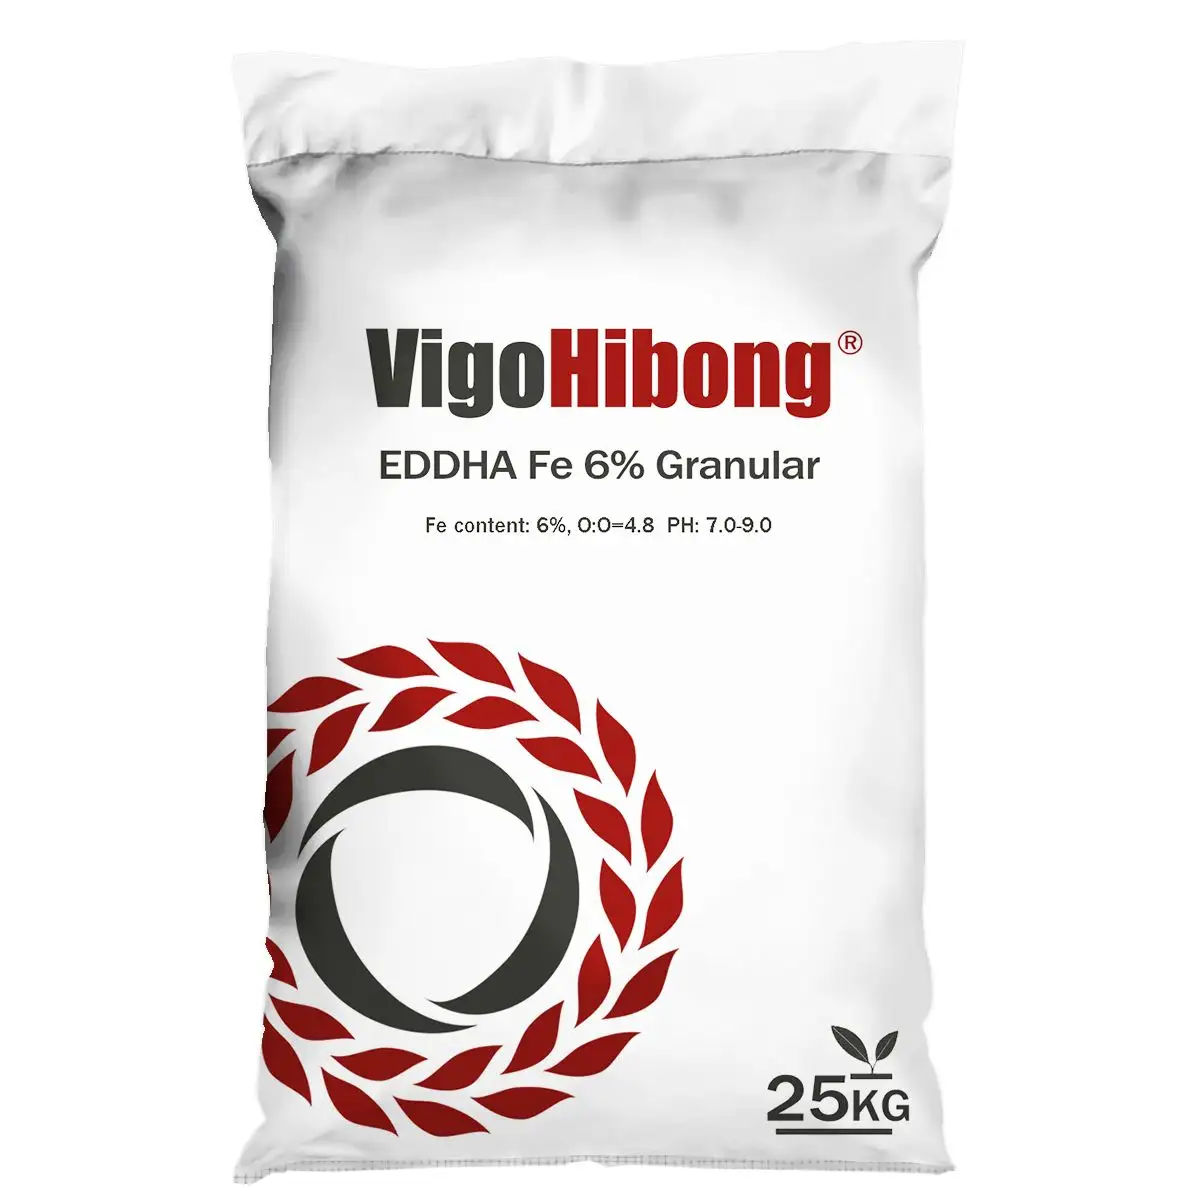 Vigohiong — technologie de pulsage avancé, bouddha Fe, structure en fer anodisé, élément nutritif